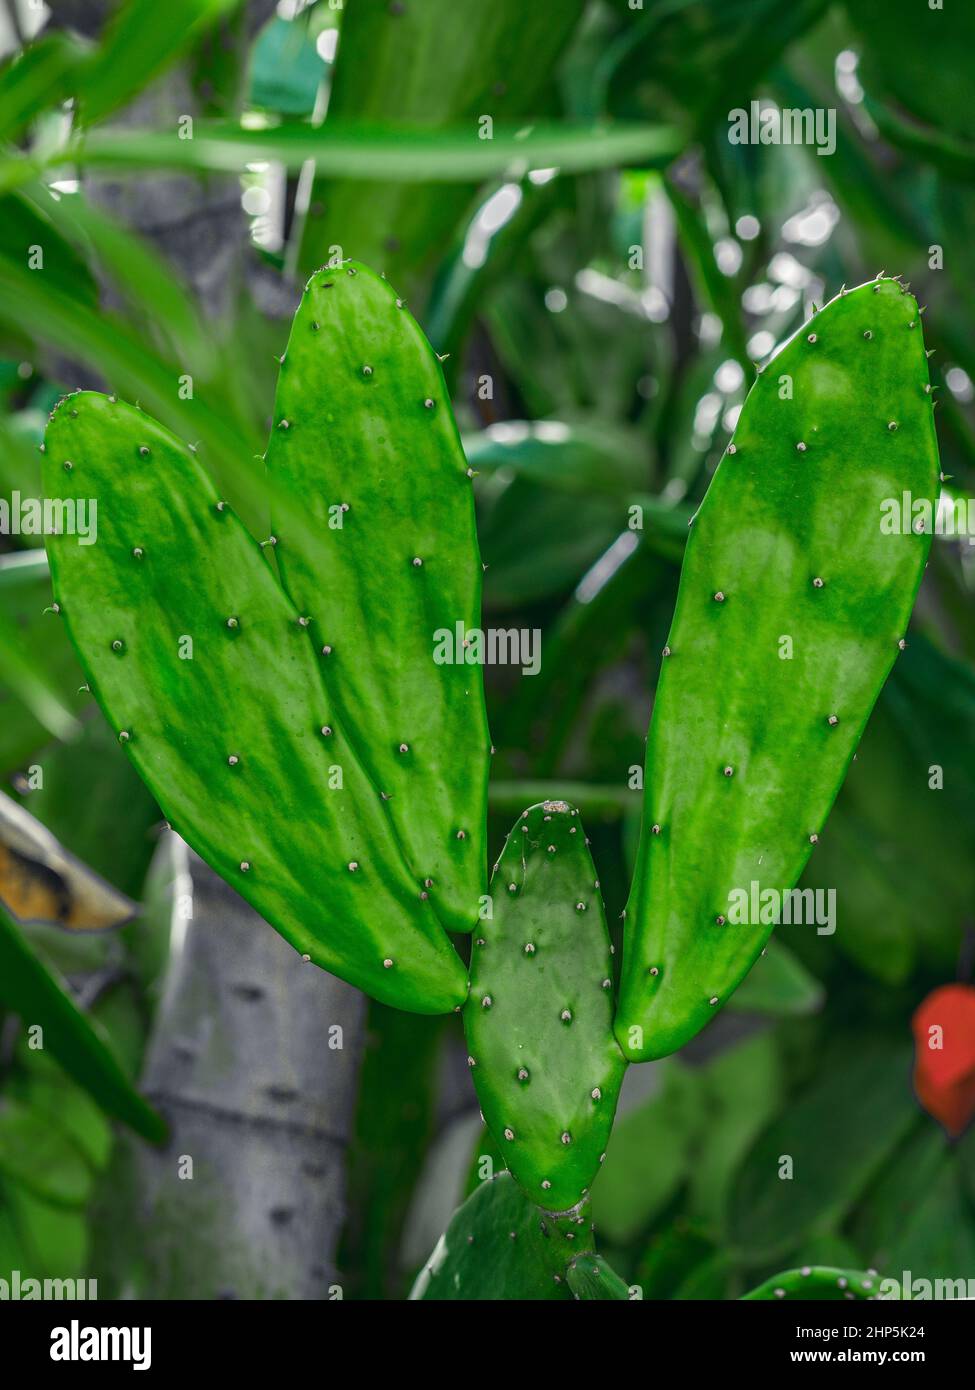 Das Foto zeigt Teile eines Kaktus. Die exotische Sukulente enthält mehrere Nadeln. Ein dunkelgrüner Kaktus aus der Dominikanischen Republik. Stockfoto